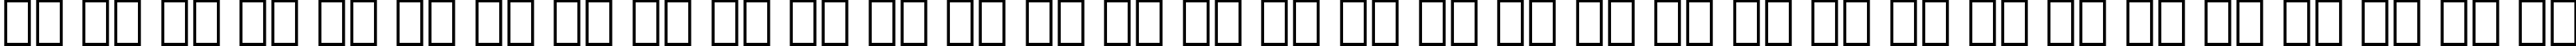 Пример написания русского алфавита шрифтом Folio Light Italic BT